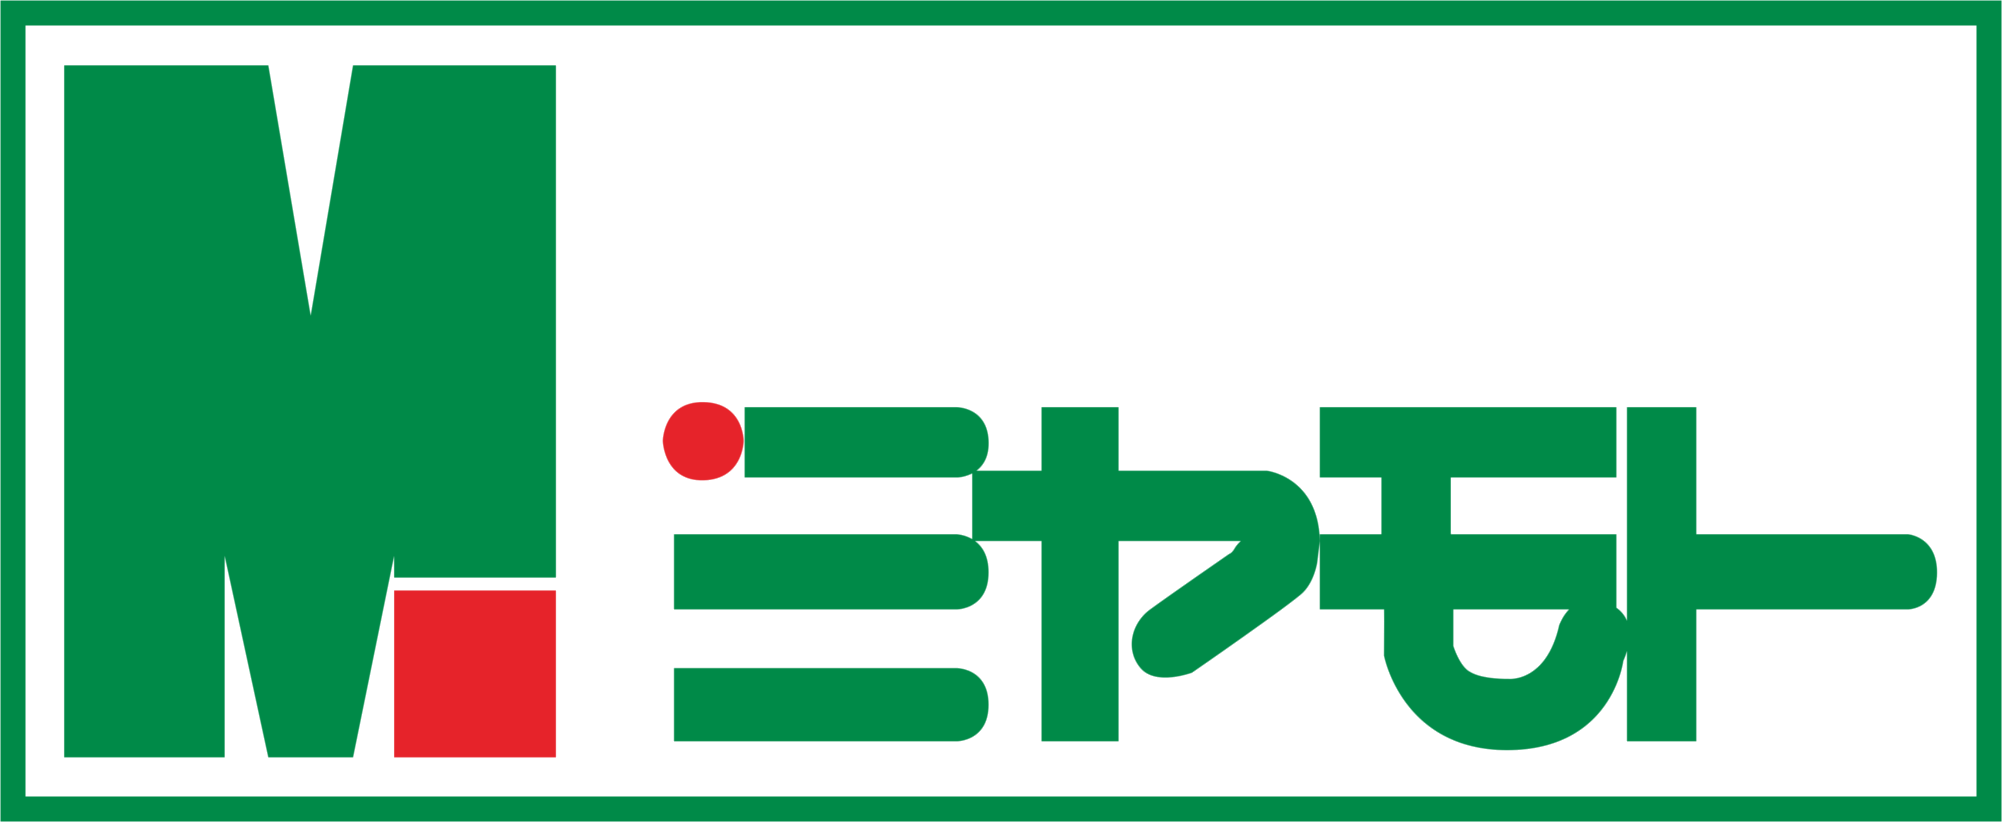 株式会社宮本薬局のロゴとなっております。